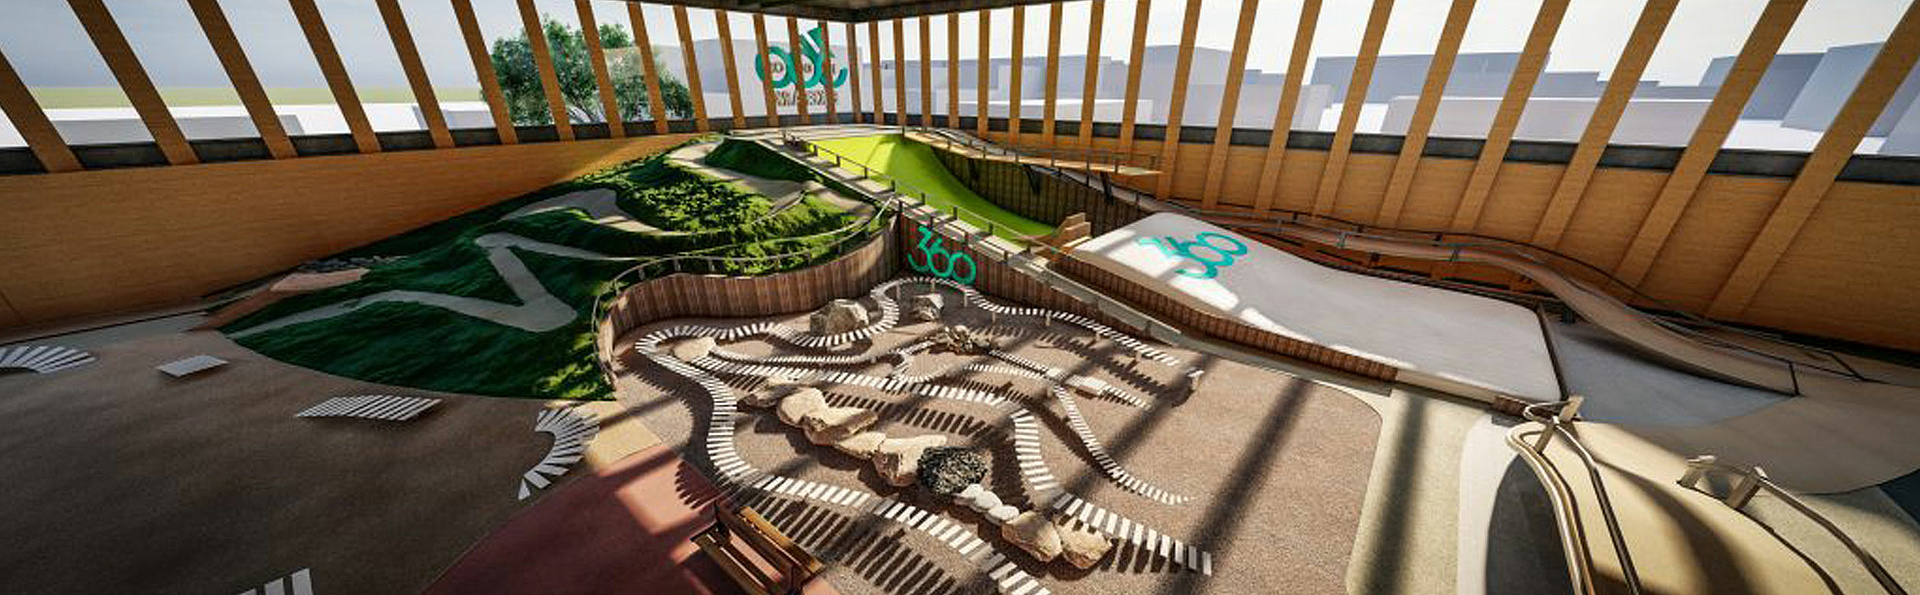 3D rendering of an indoor park